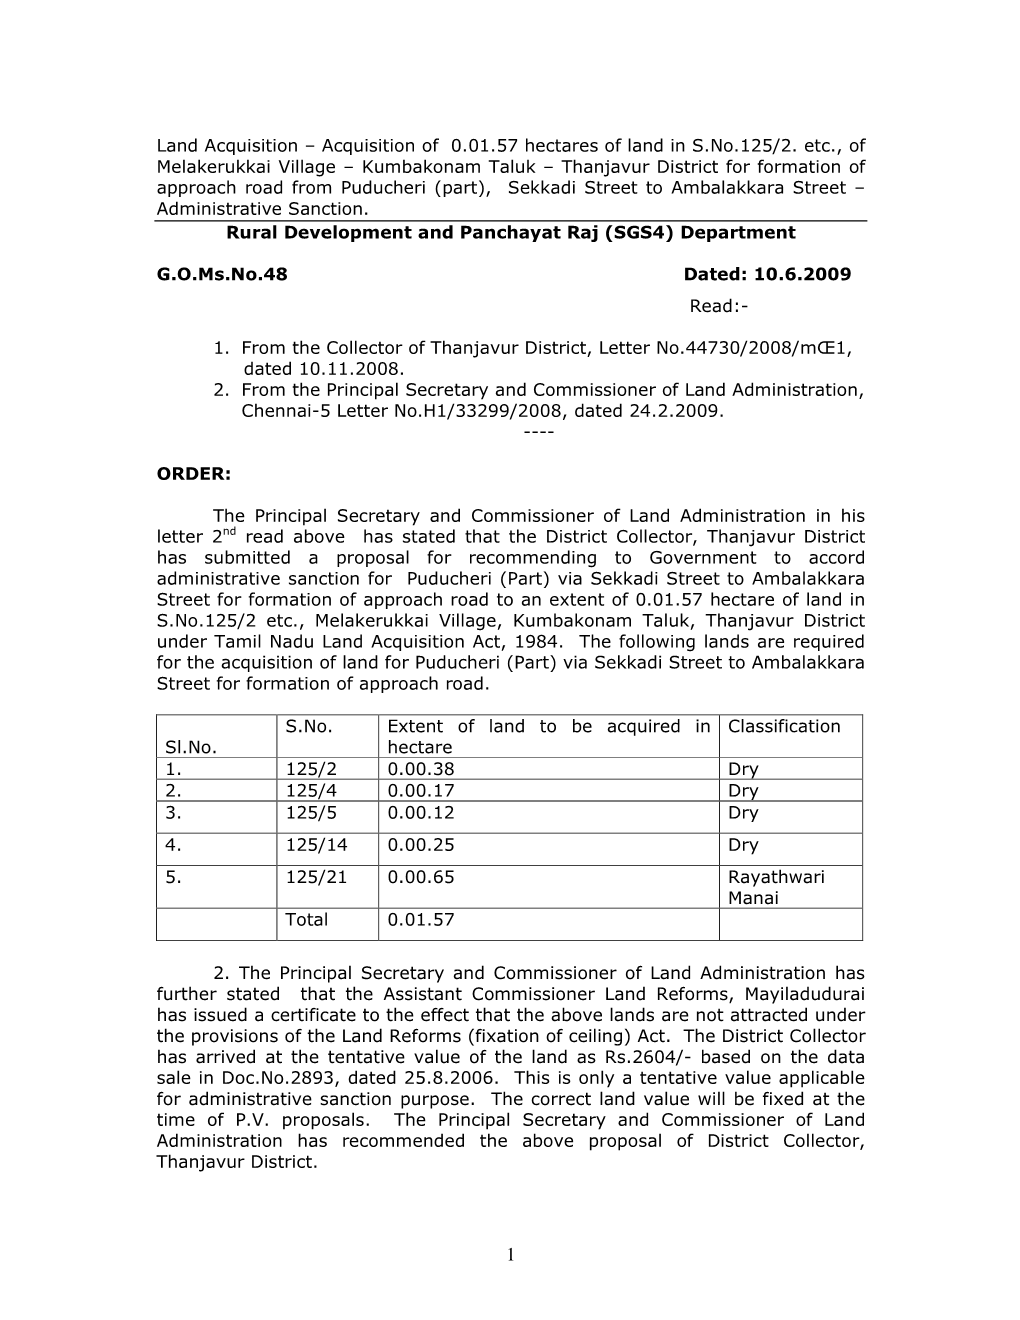 Land Acquisition – Acquisition of 0.01.57 Hectares of Land in S.No.125/2. Etc., of Melakerukkai Village – Kumbakonam Taluk